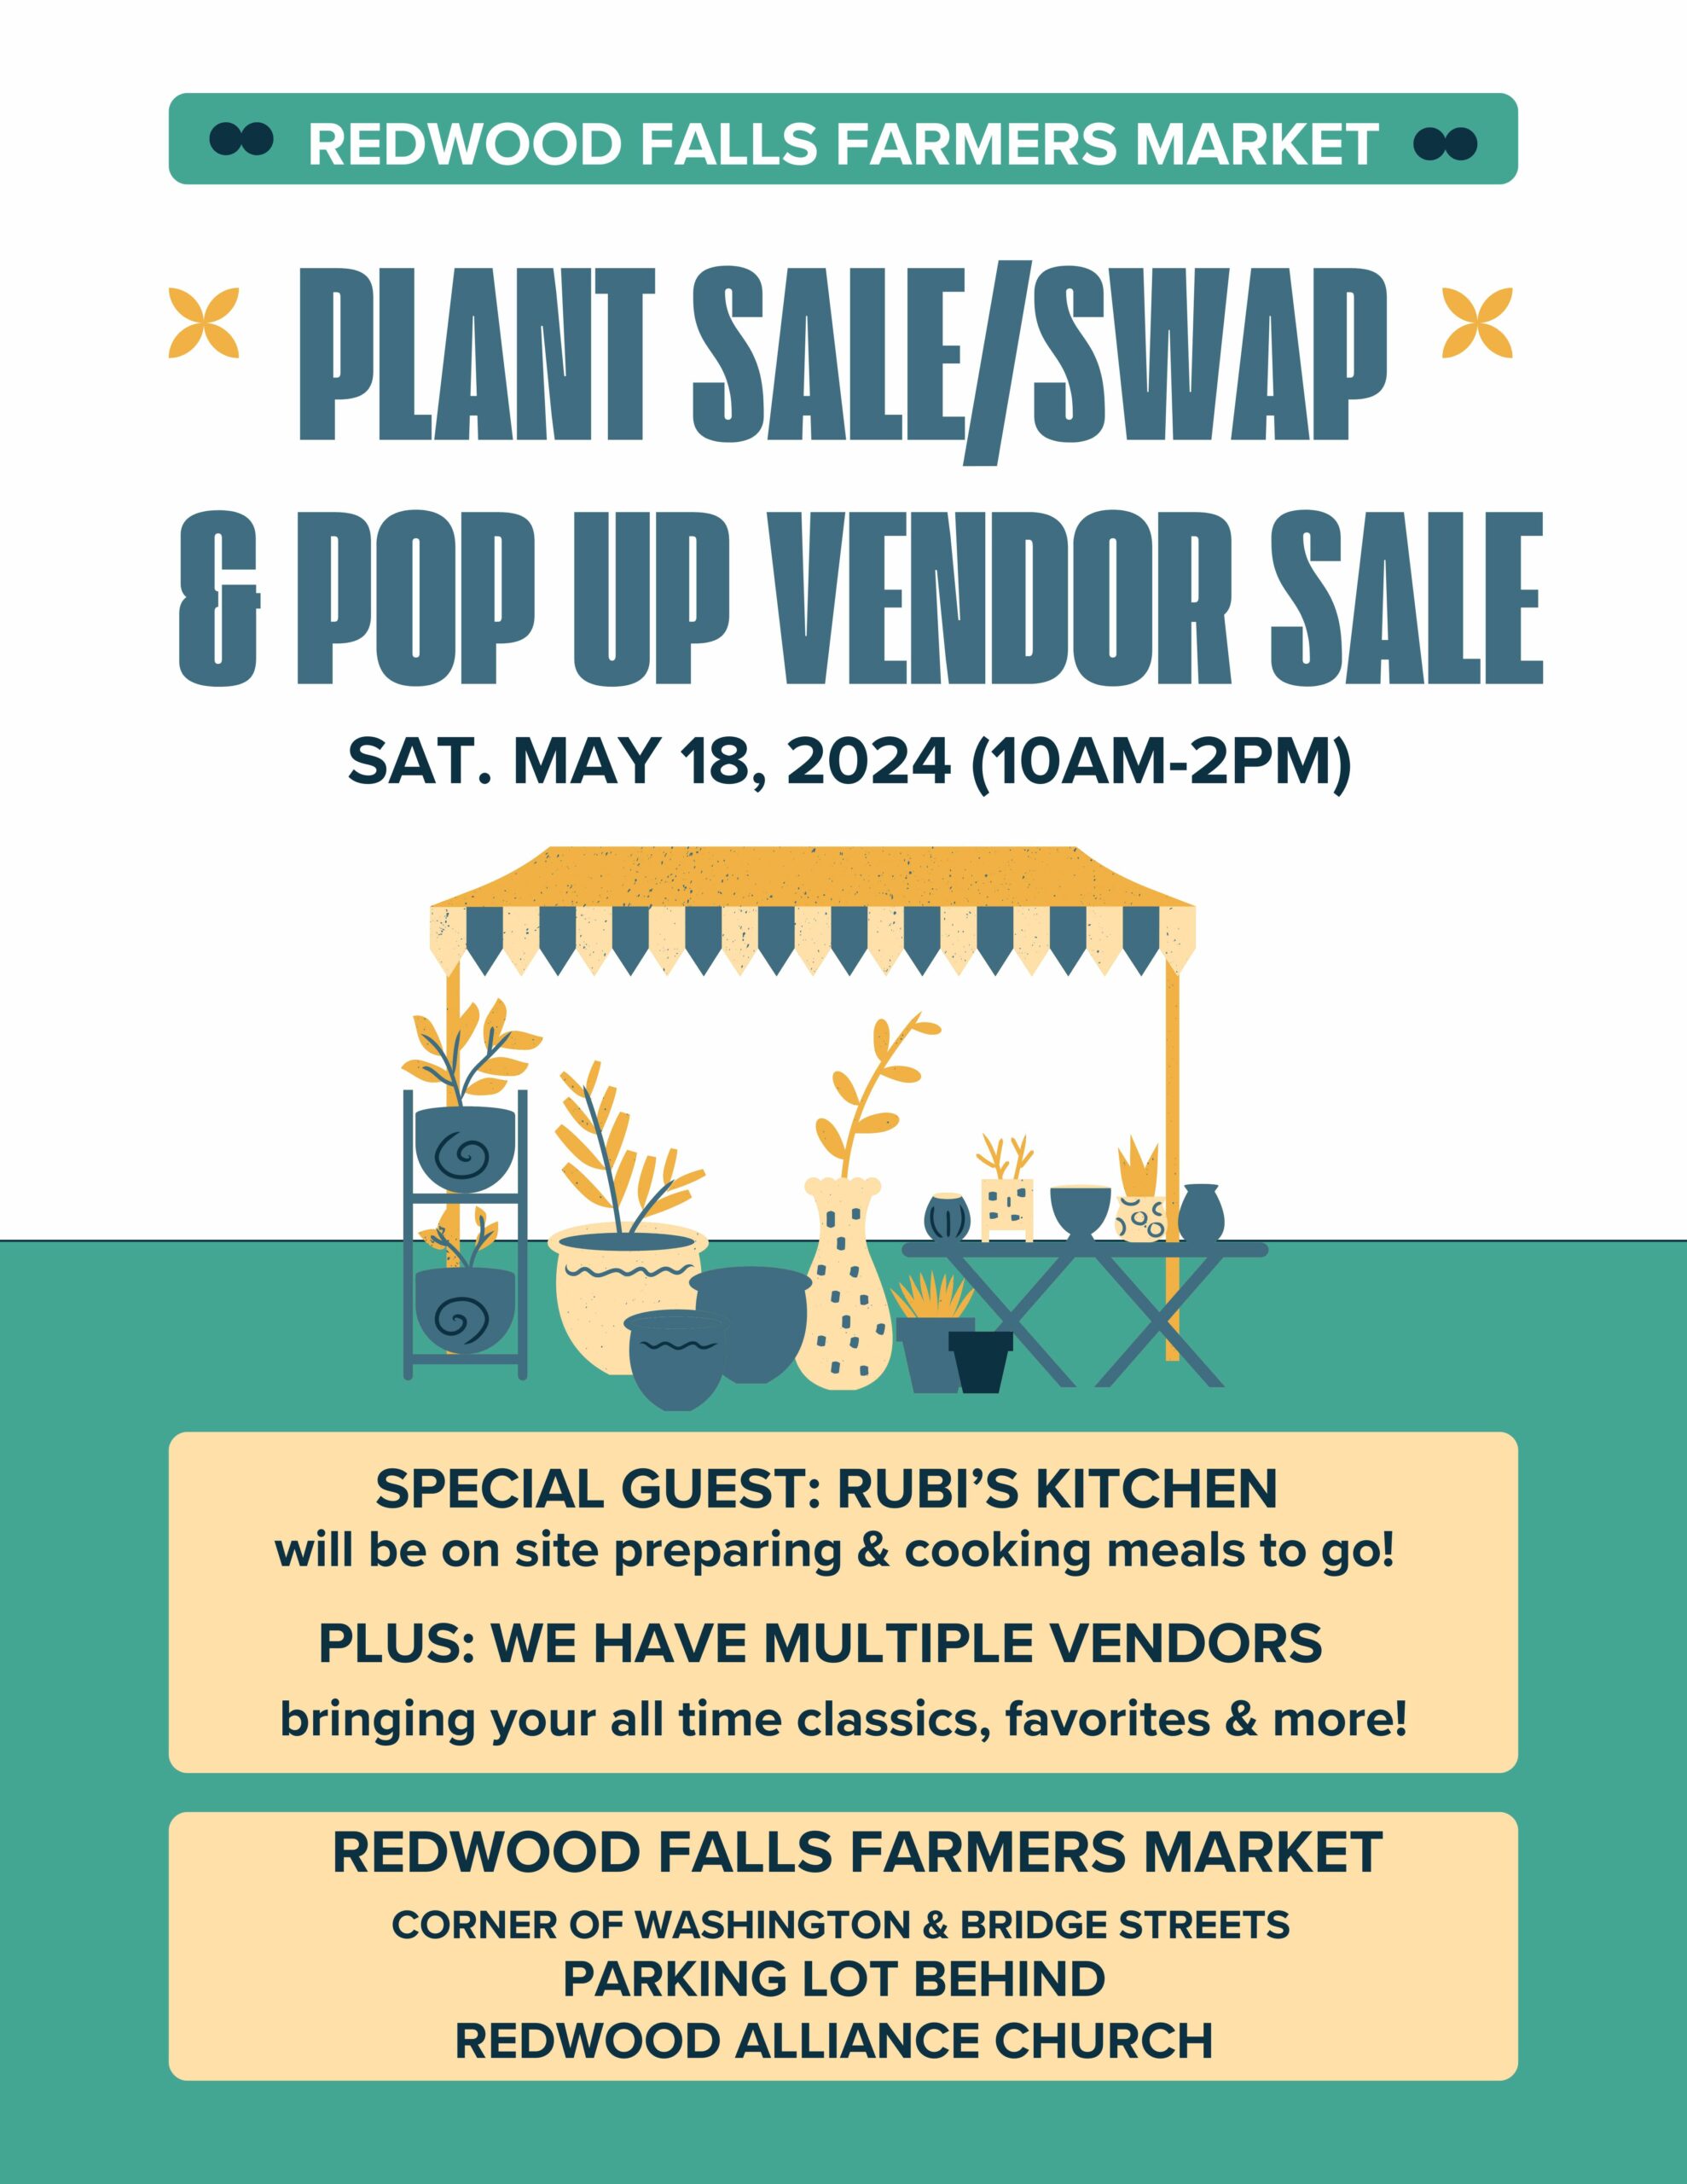 <h1 class="tribe-events-single-event-title">Redwood Falls Farmers Market: Plant Sale & Pop Up Vendor Sale</h1>